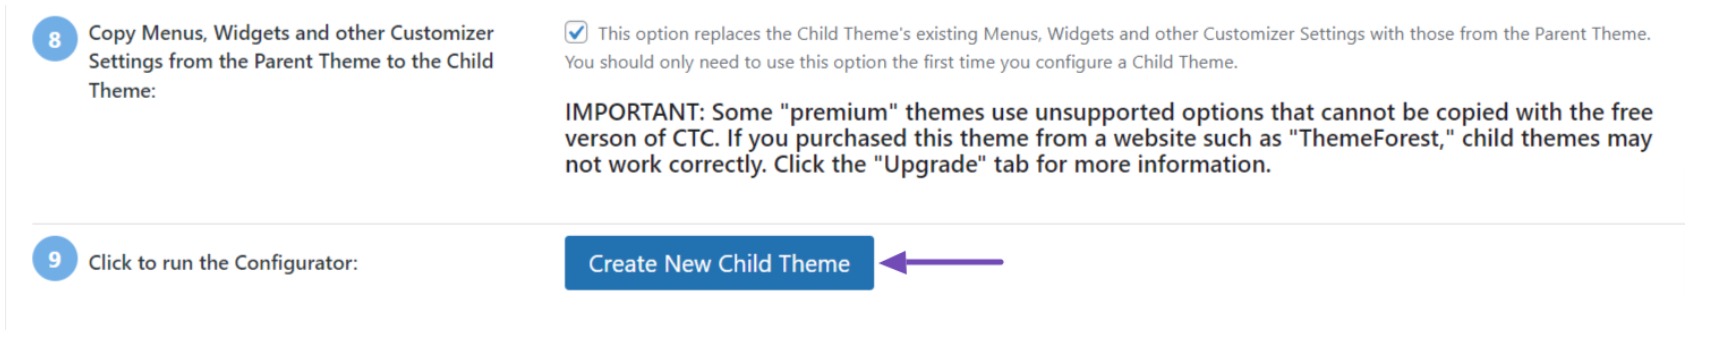 Click Create New Child Theme